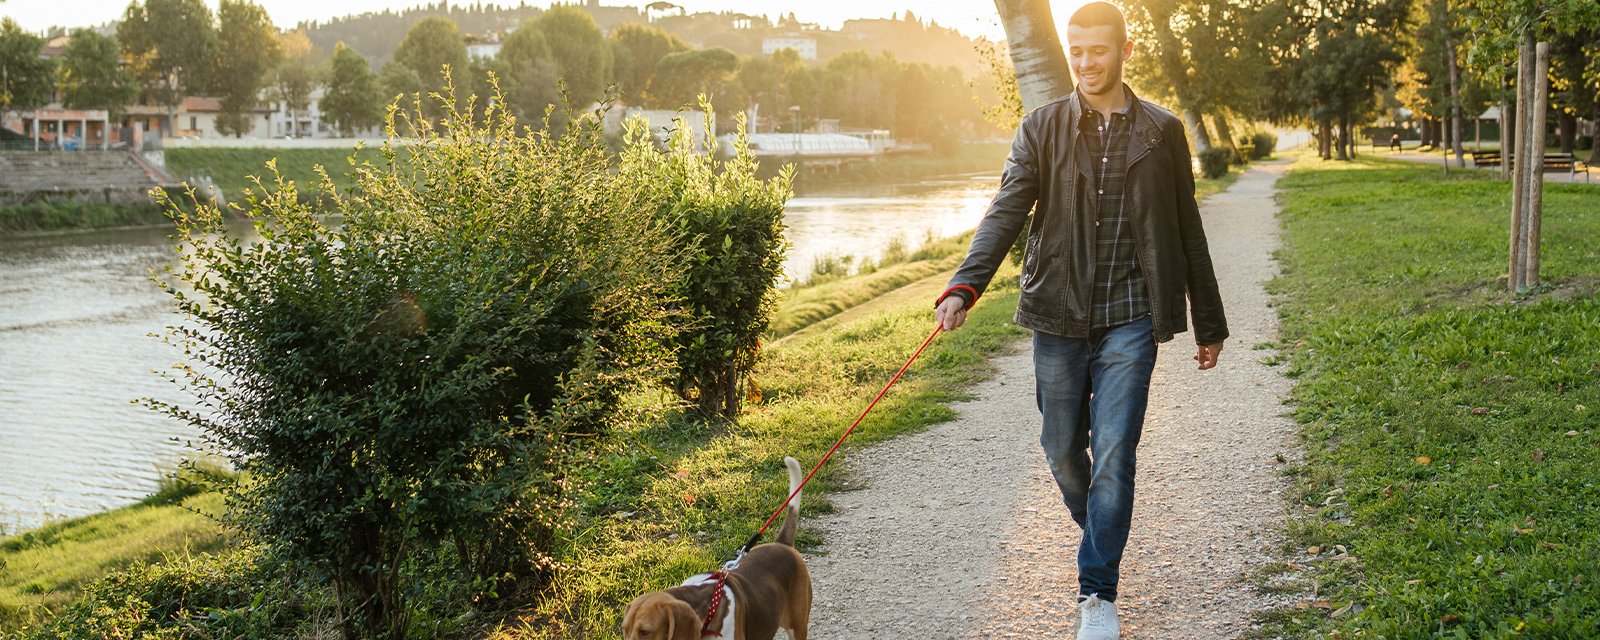 Comment dresser son chien à marcher en laisse : guide complet